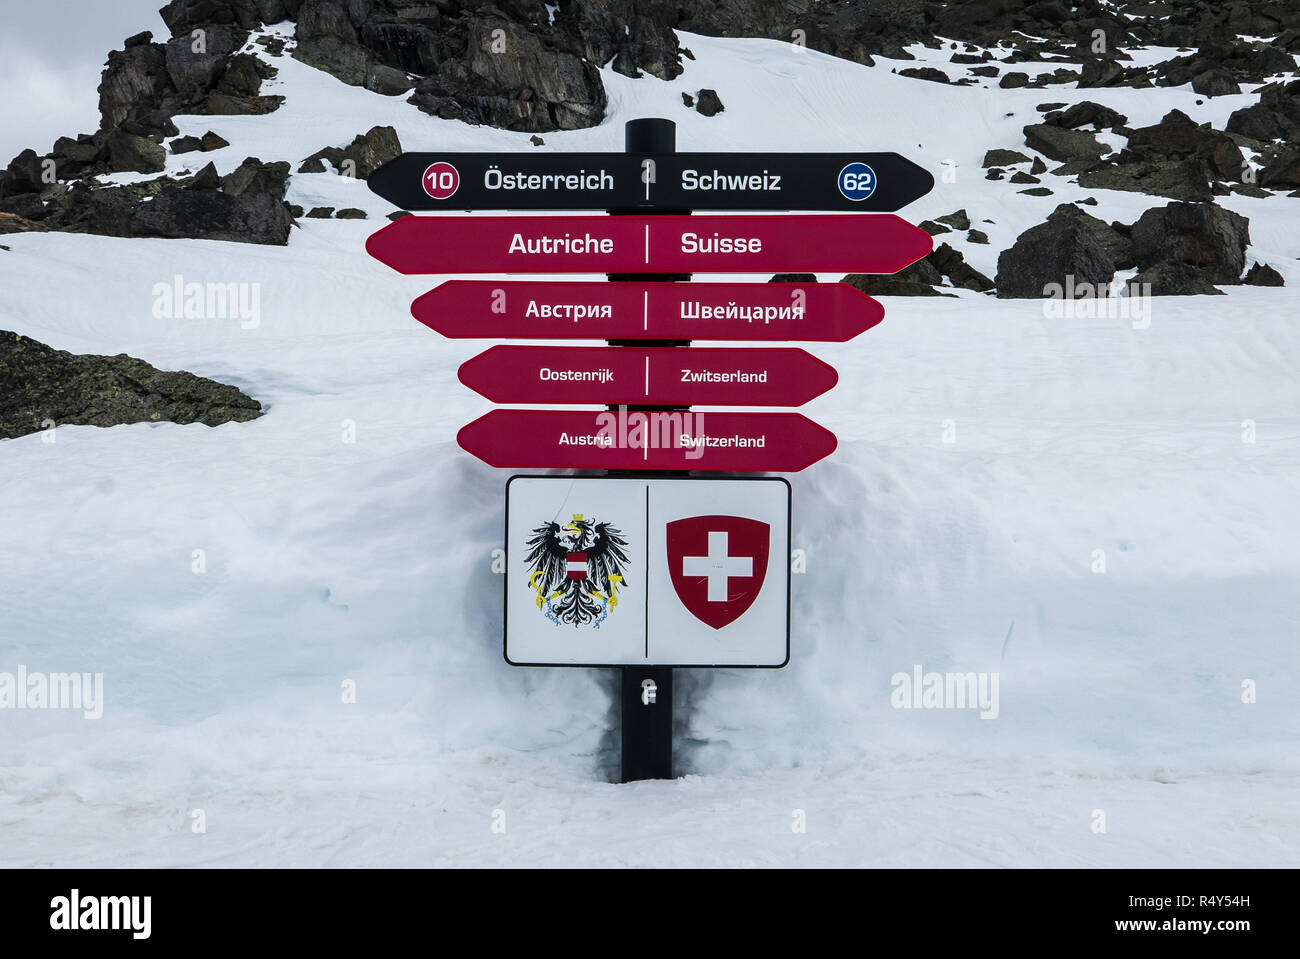 Sign post zeigt zwei Richtungen für zwei Skigebieten in den Europäischen  Alpen - Ischgl und Samnaun. Österreich und Schweiz in mehreren Sprachen  Stockfotografie - Alamy